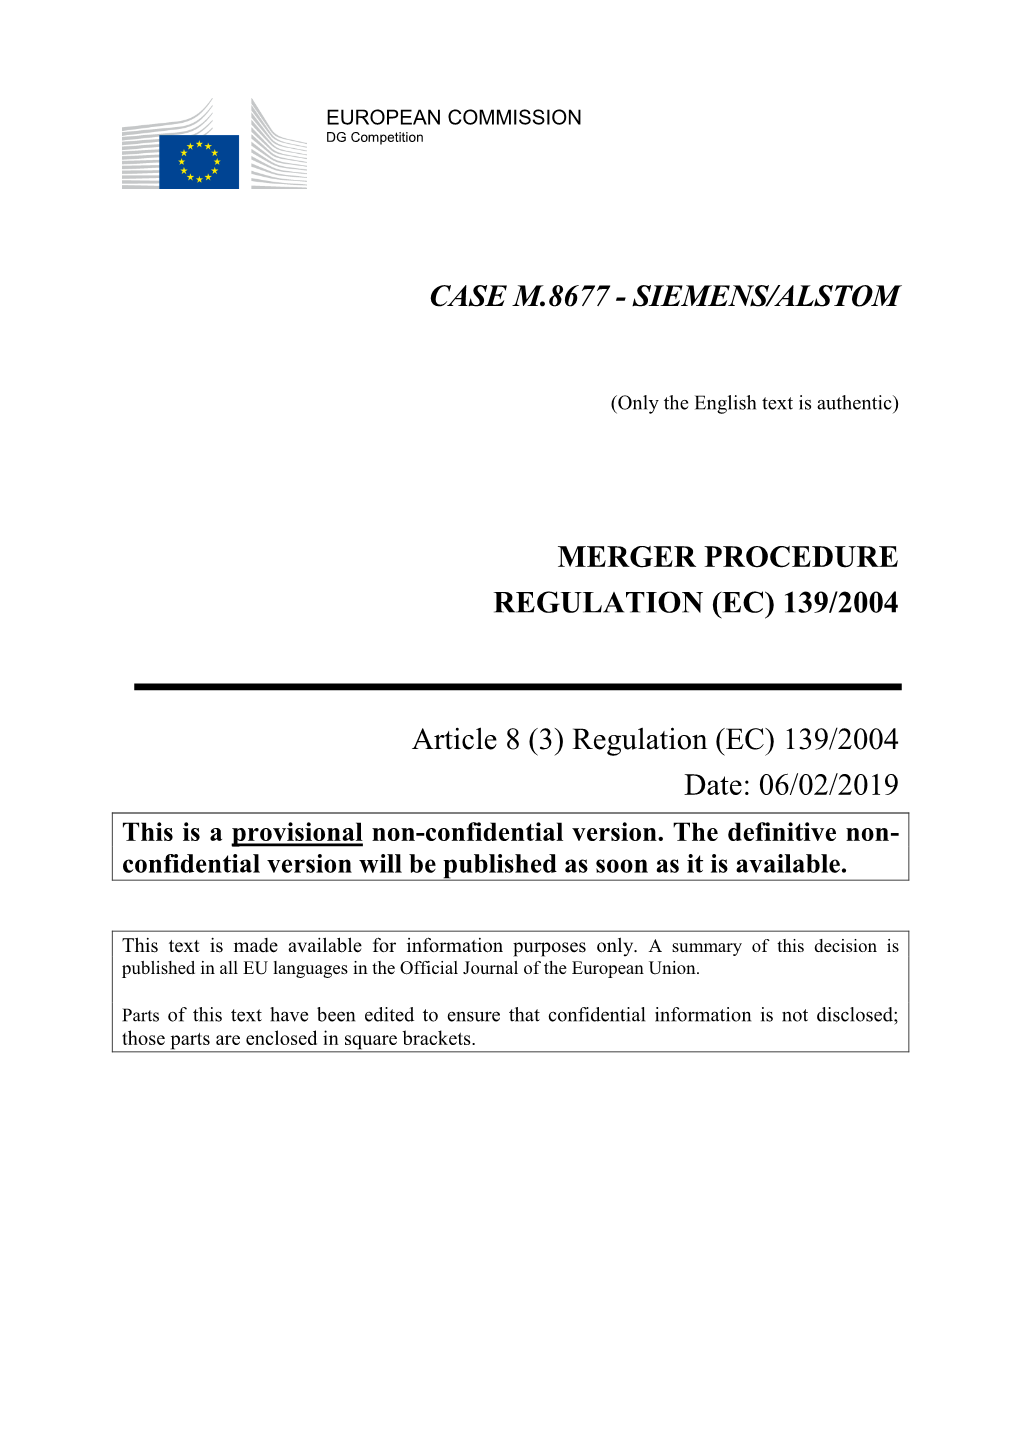 Siemens/Alstom Merger Procedure Regulation